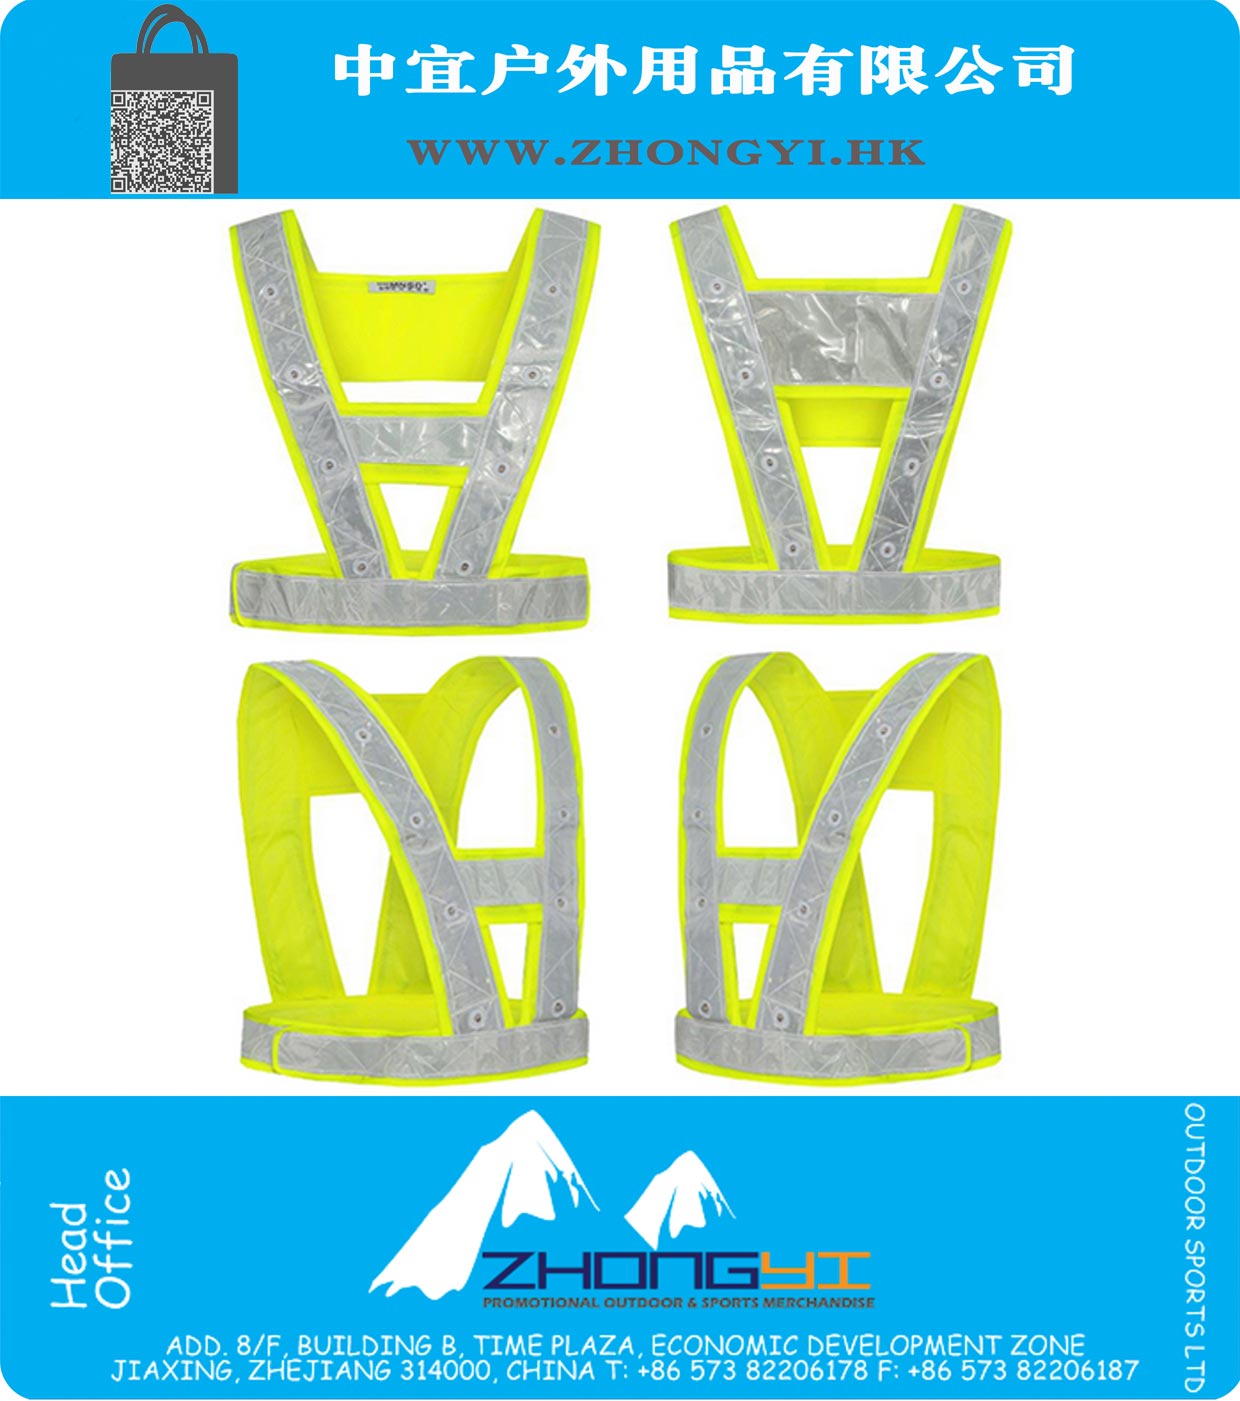 Hi vis 16 LED Light Up Safety Reflective Stripes Vest Traffic Outdoor Night Safety Warning Clothing led safety vest